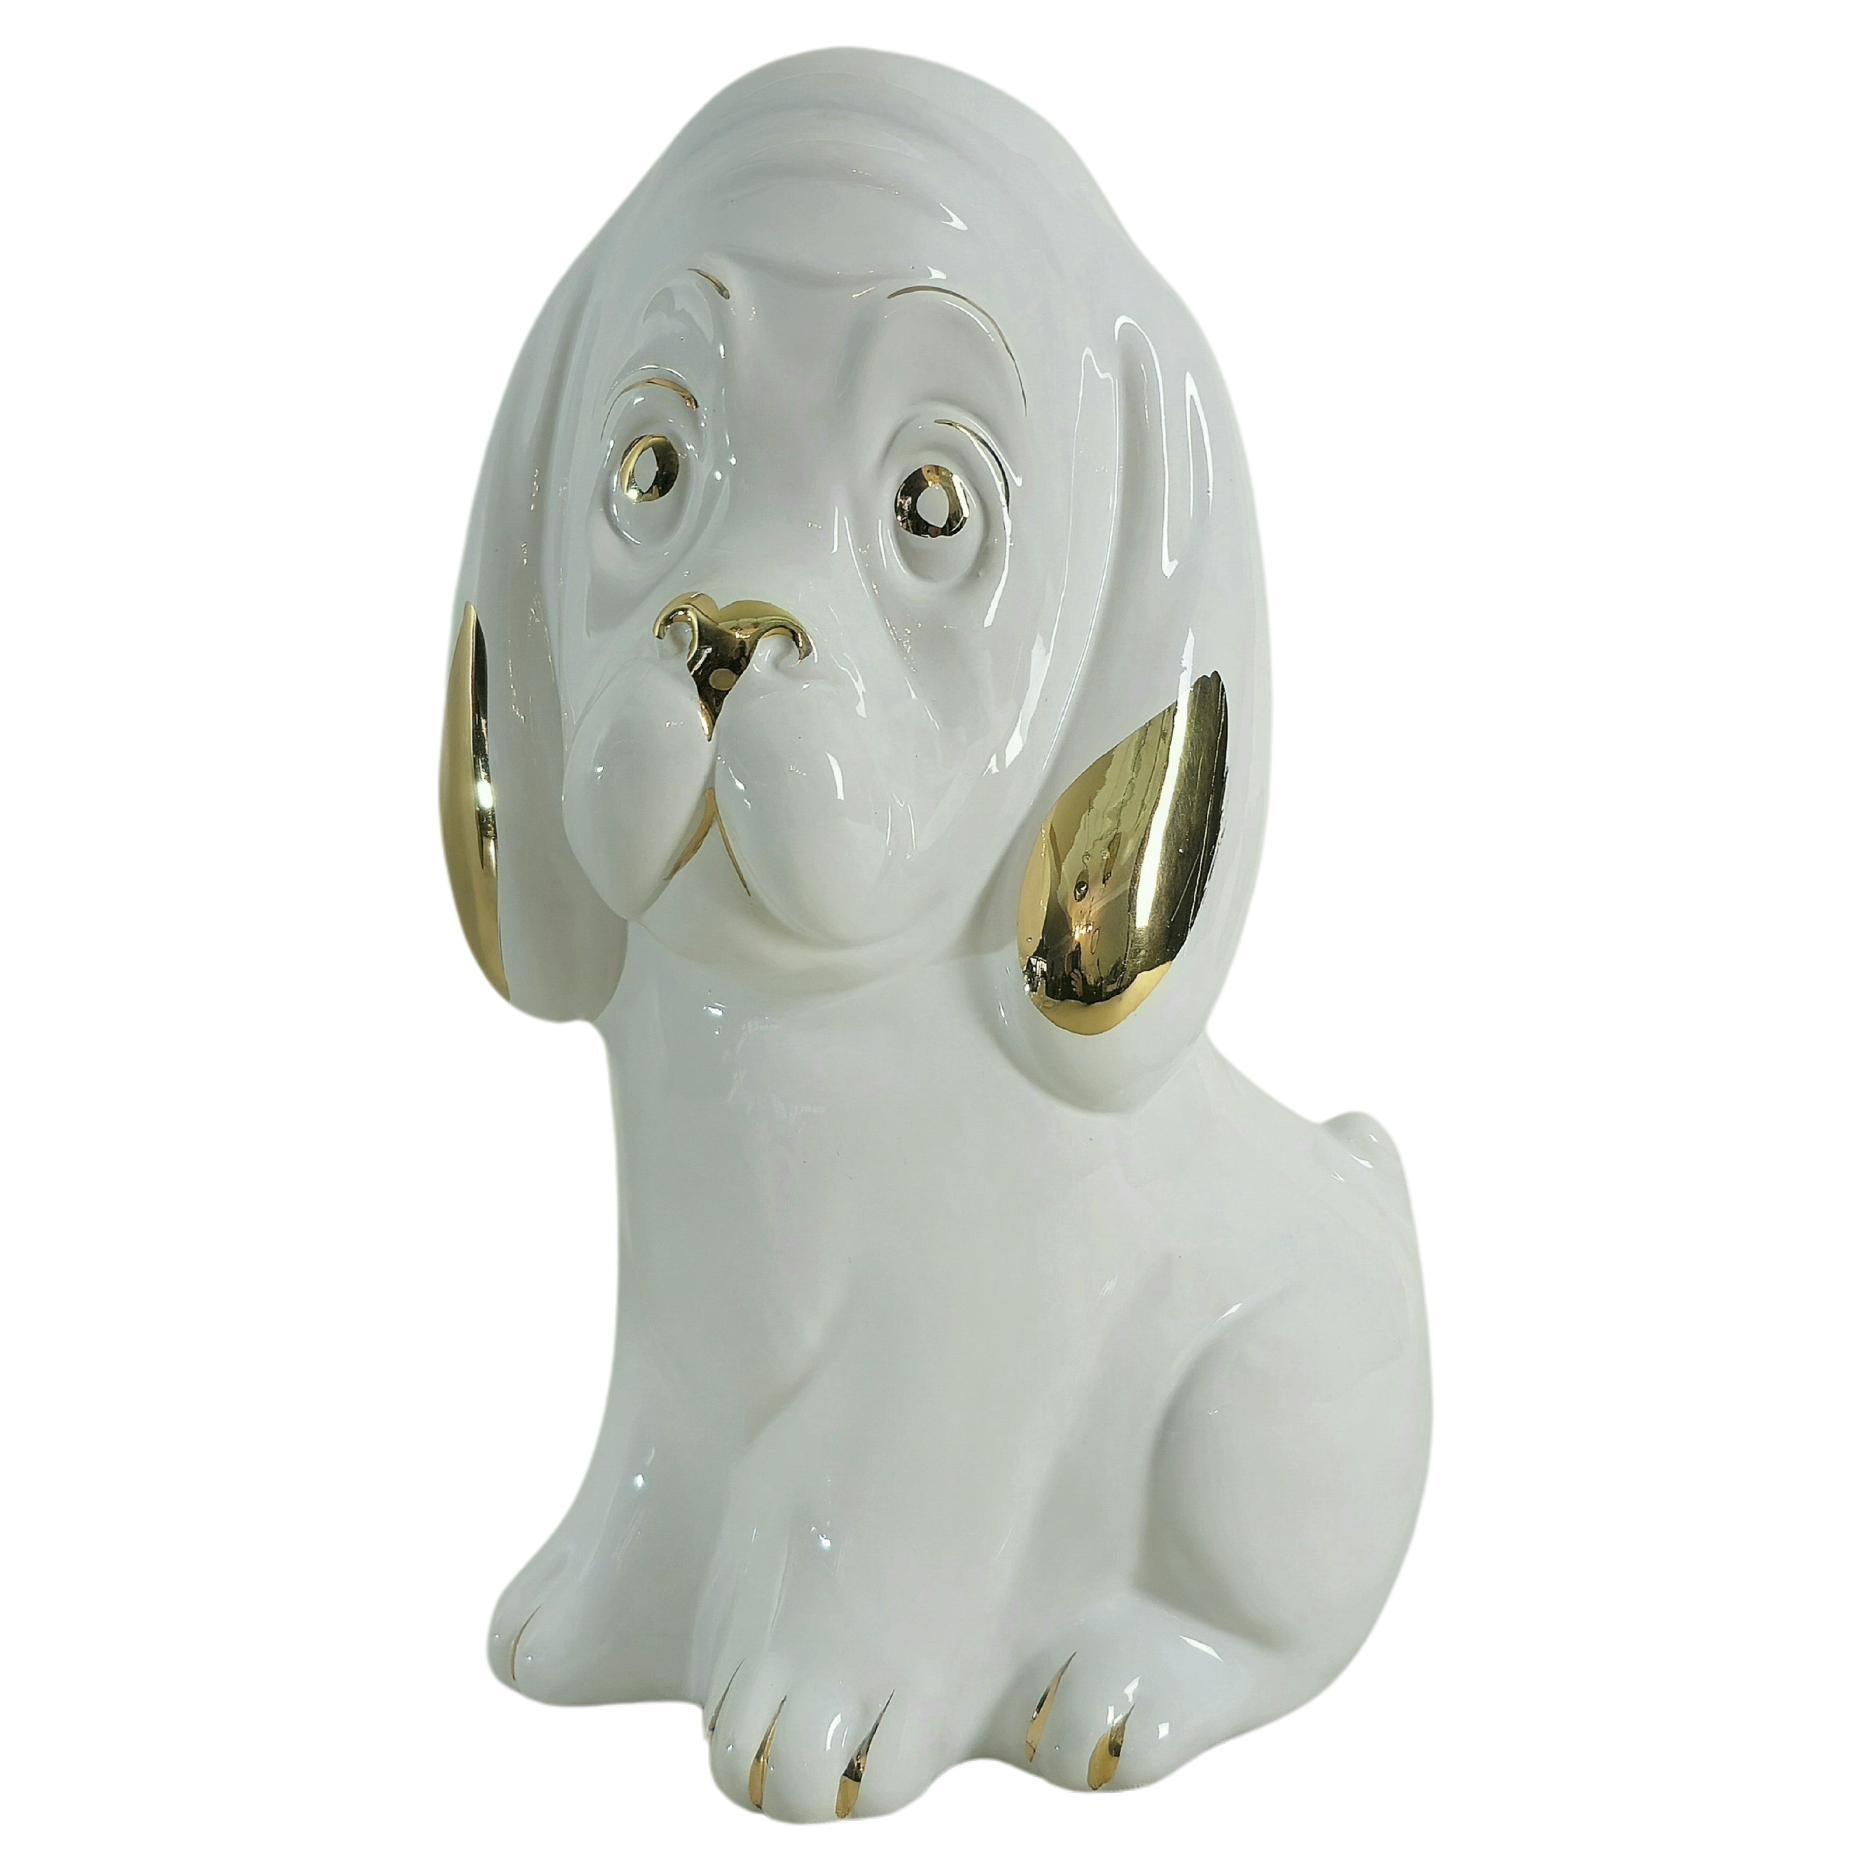 Dekorative Objekt Hunde-Porzellan-Skulptur, Midcentury Modern, italienisches Design, 1970er Jahre